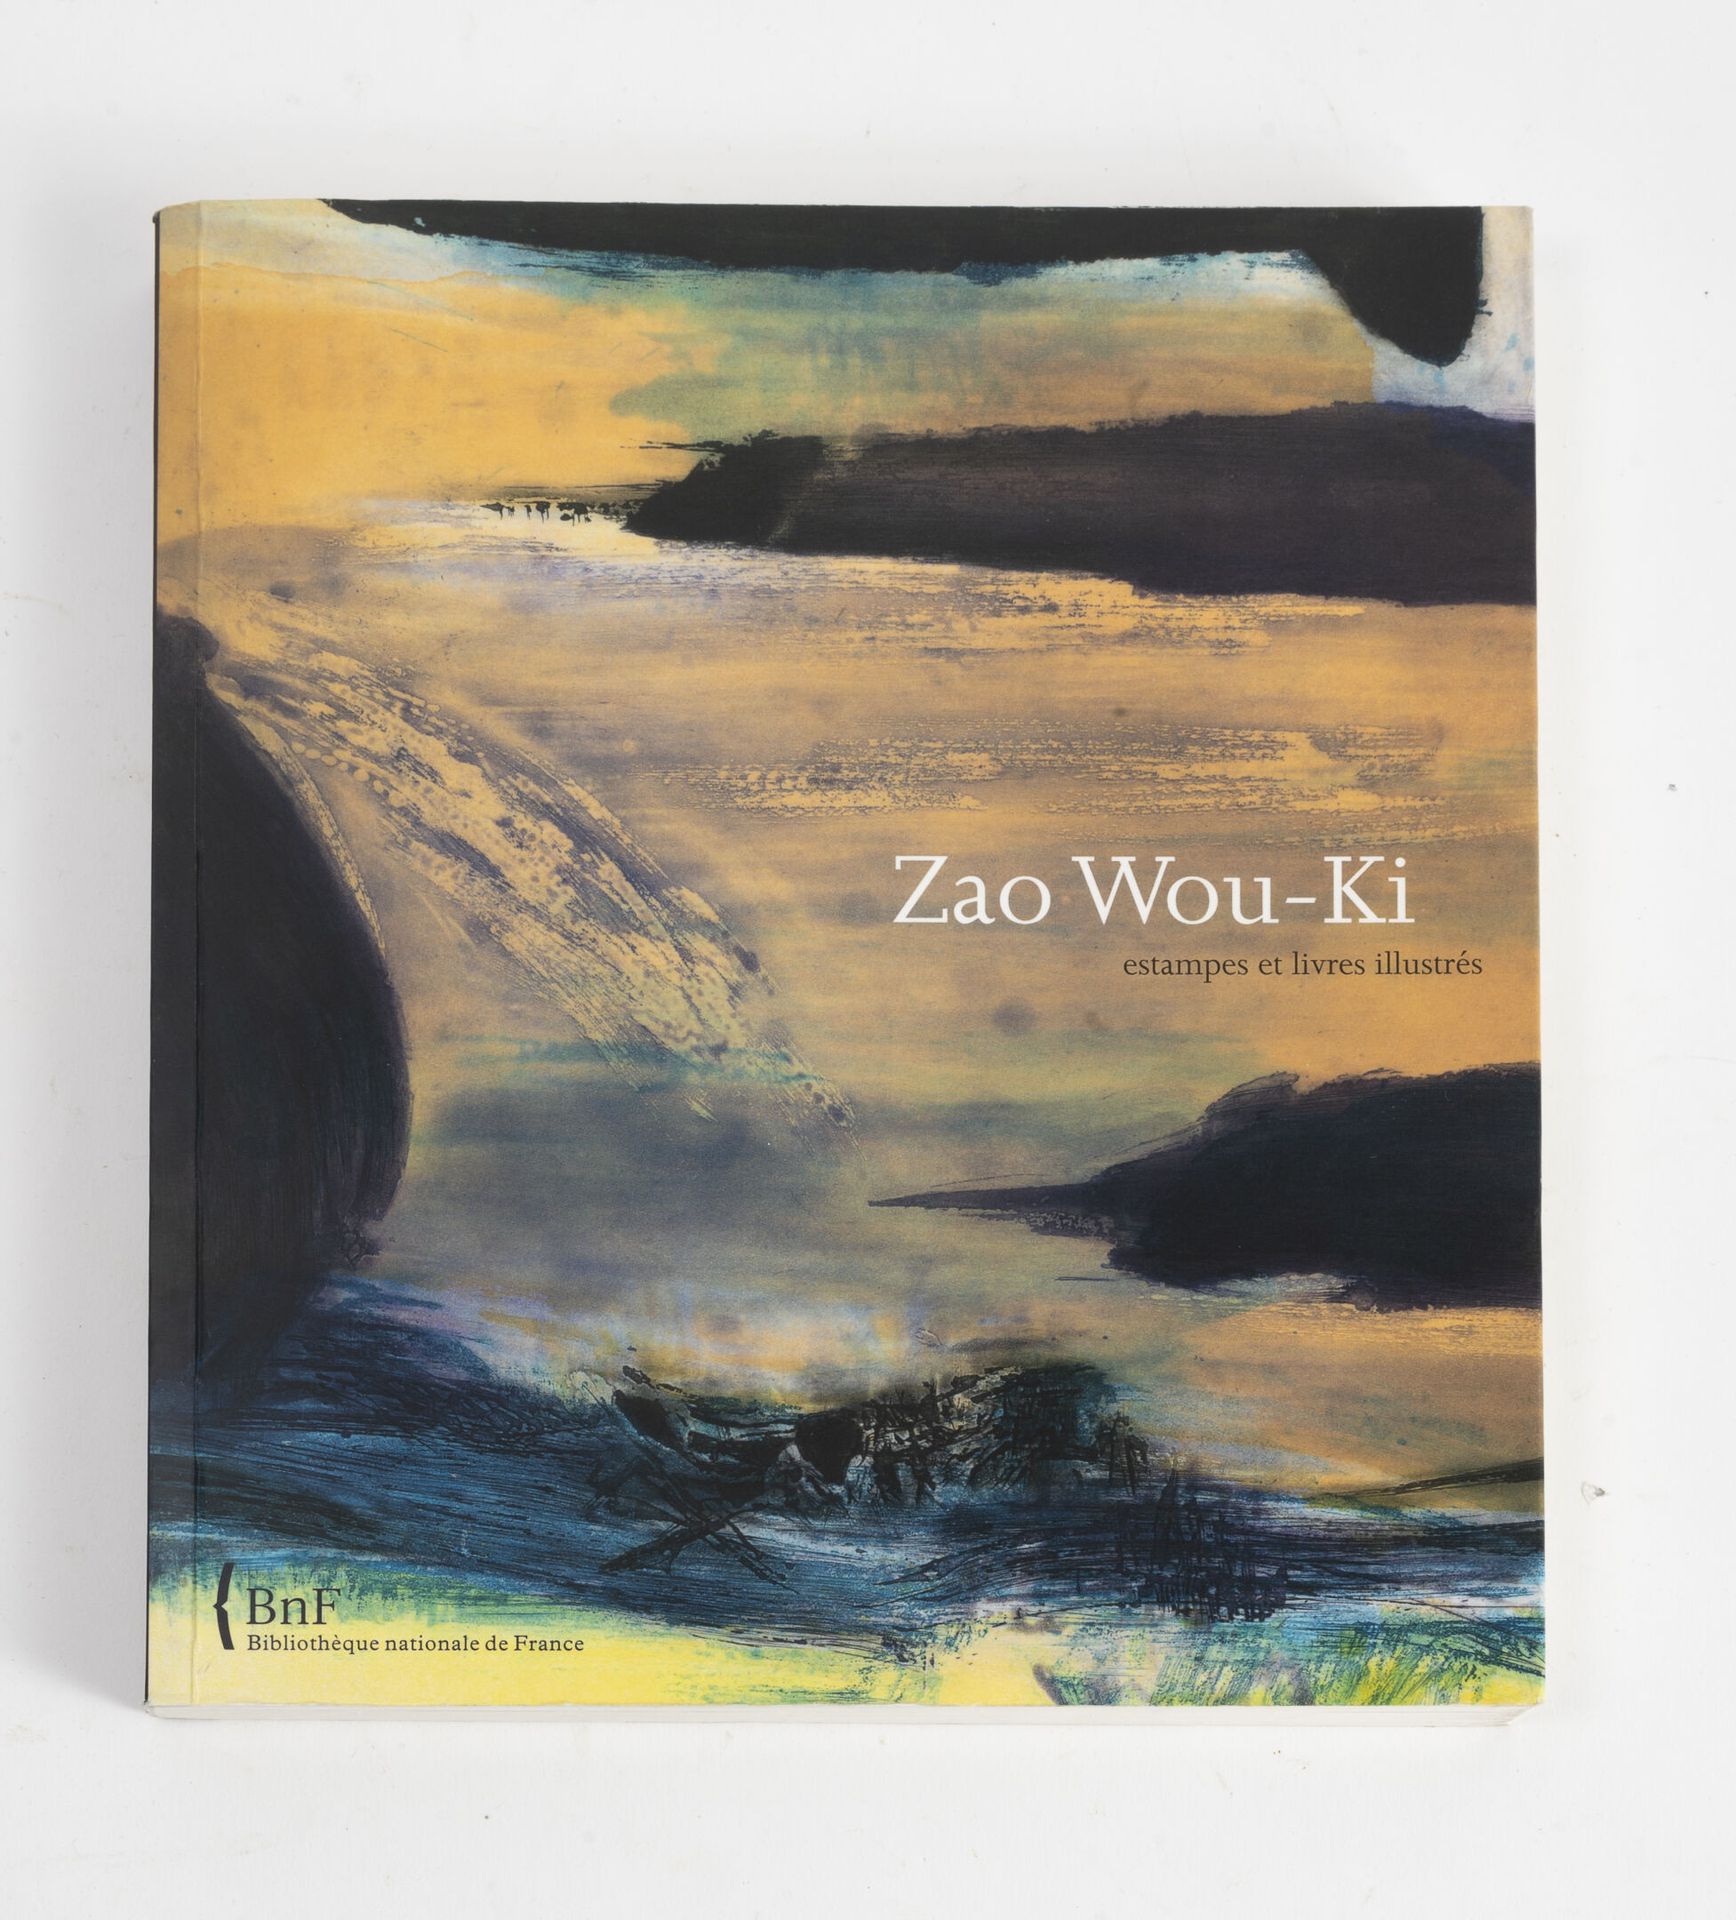 COLLECTIF Zao Wou-ki, grabados y libros ilustrados.
Catálogo de la exposición en&hellip;